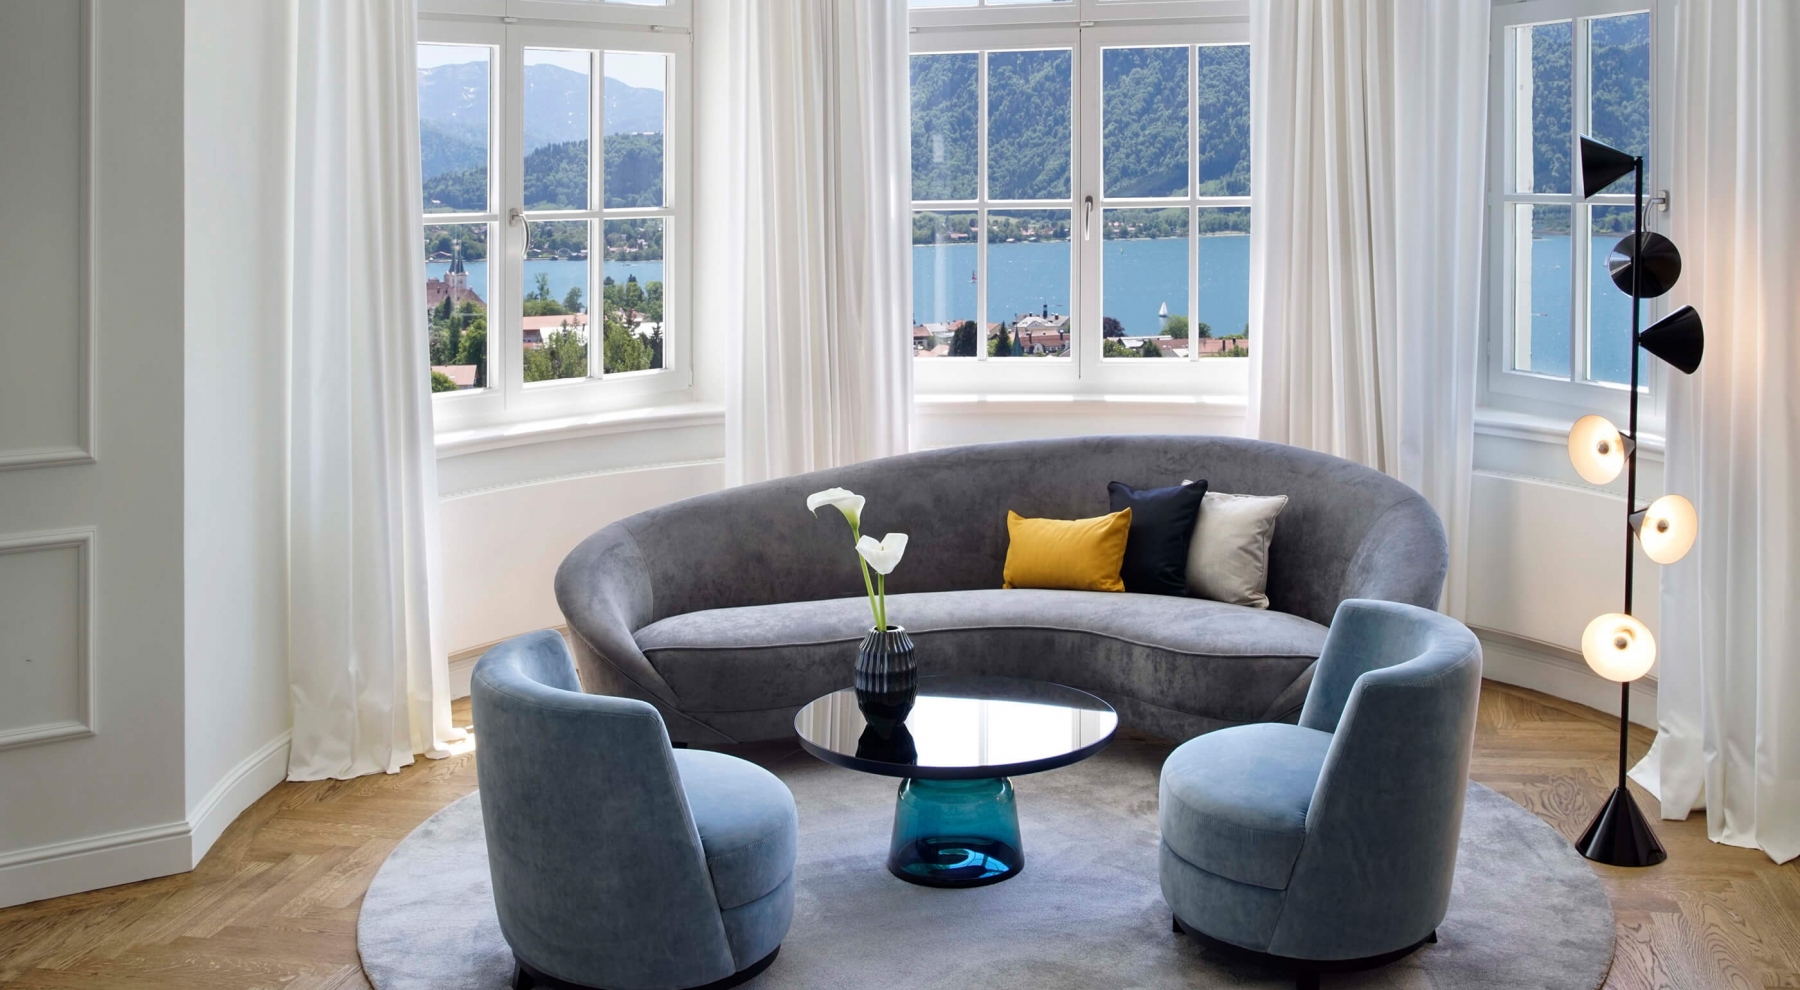 Aufnahme in der Junior Suite im Hotel Das Tegernsee mit einer modernen, hell-grauen Sitzgruppe bestehend aus einem Sofa und zwei Sesseln im Bildzentrum, welche vor einer breiten Fensterfront mit Blick auf den Tegernsee steht.